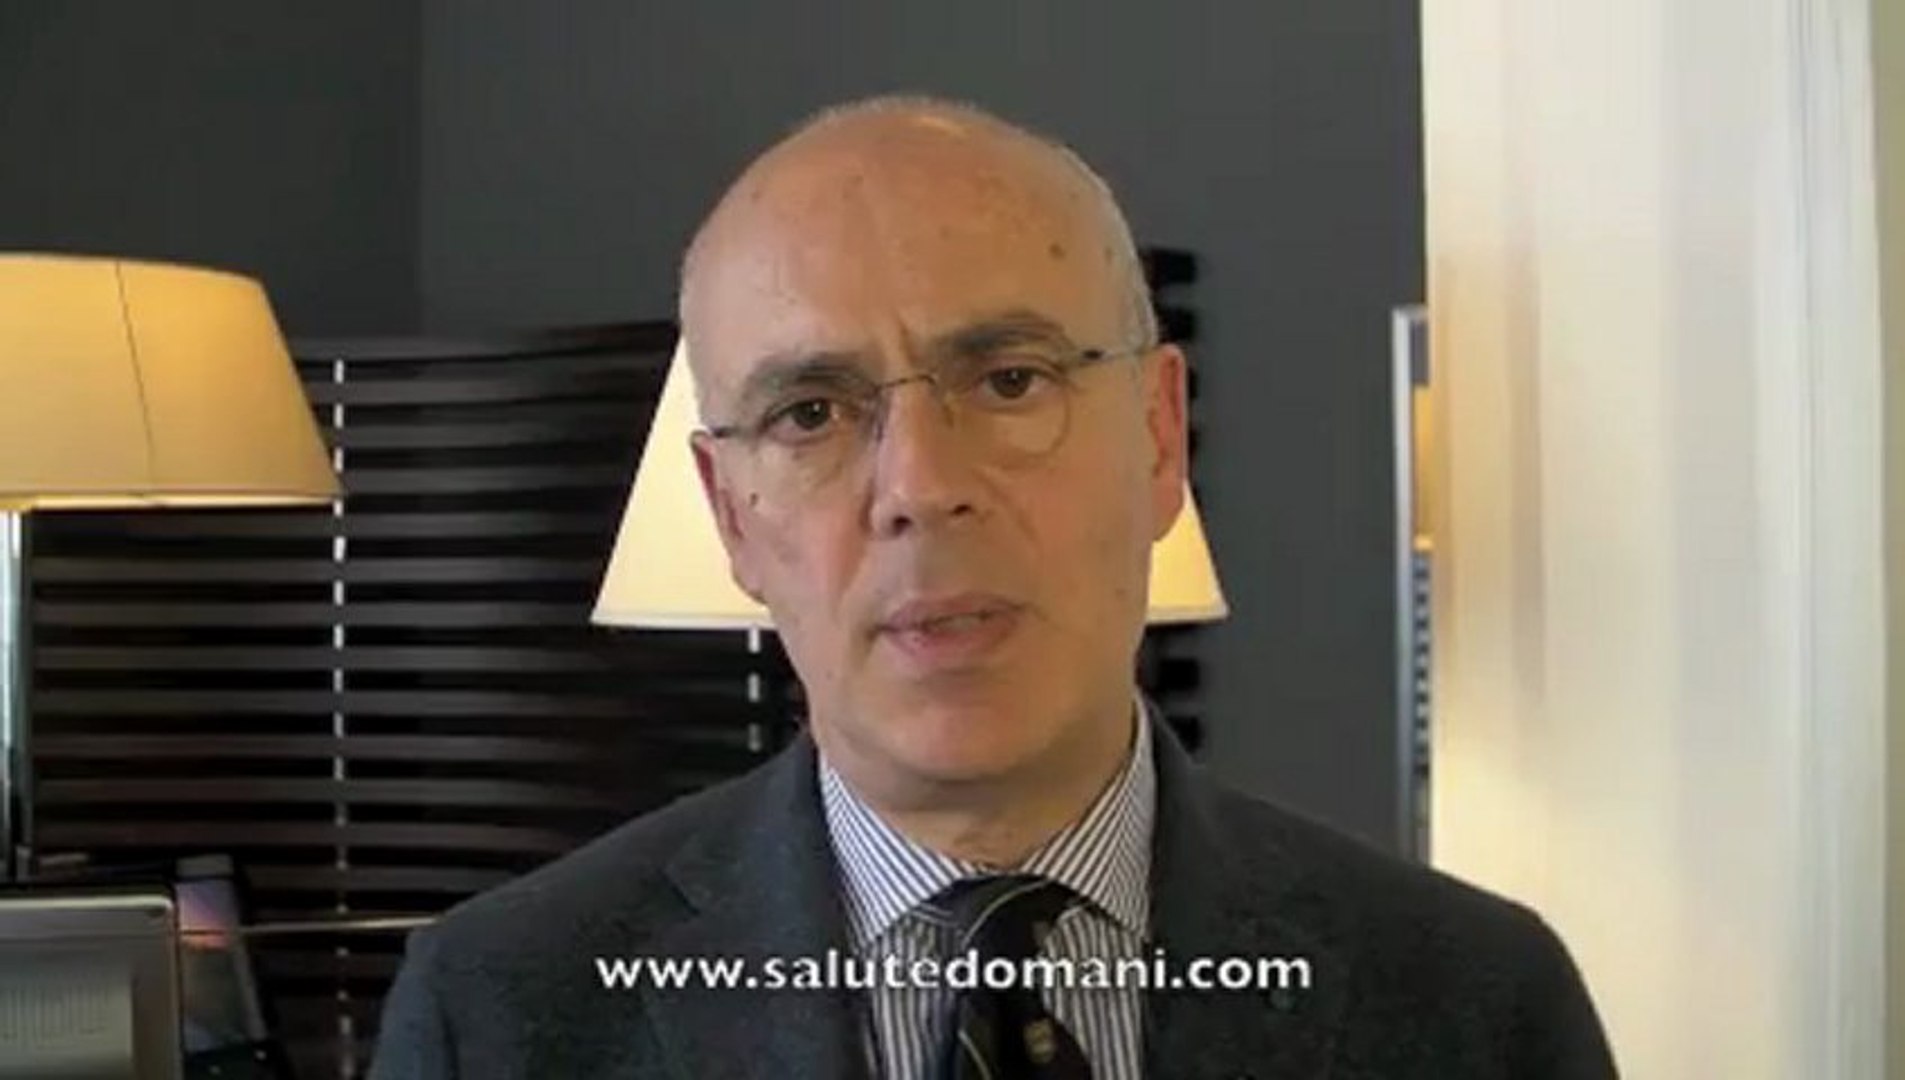 Terapia occhi, come agisce ranibizumab (Lucentis*) - intervista prof. F.  Bandello, Milano - Video Dailymotion